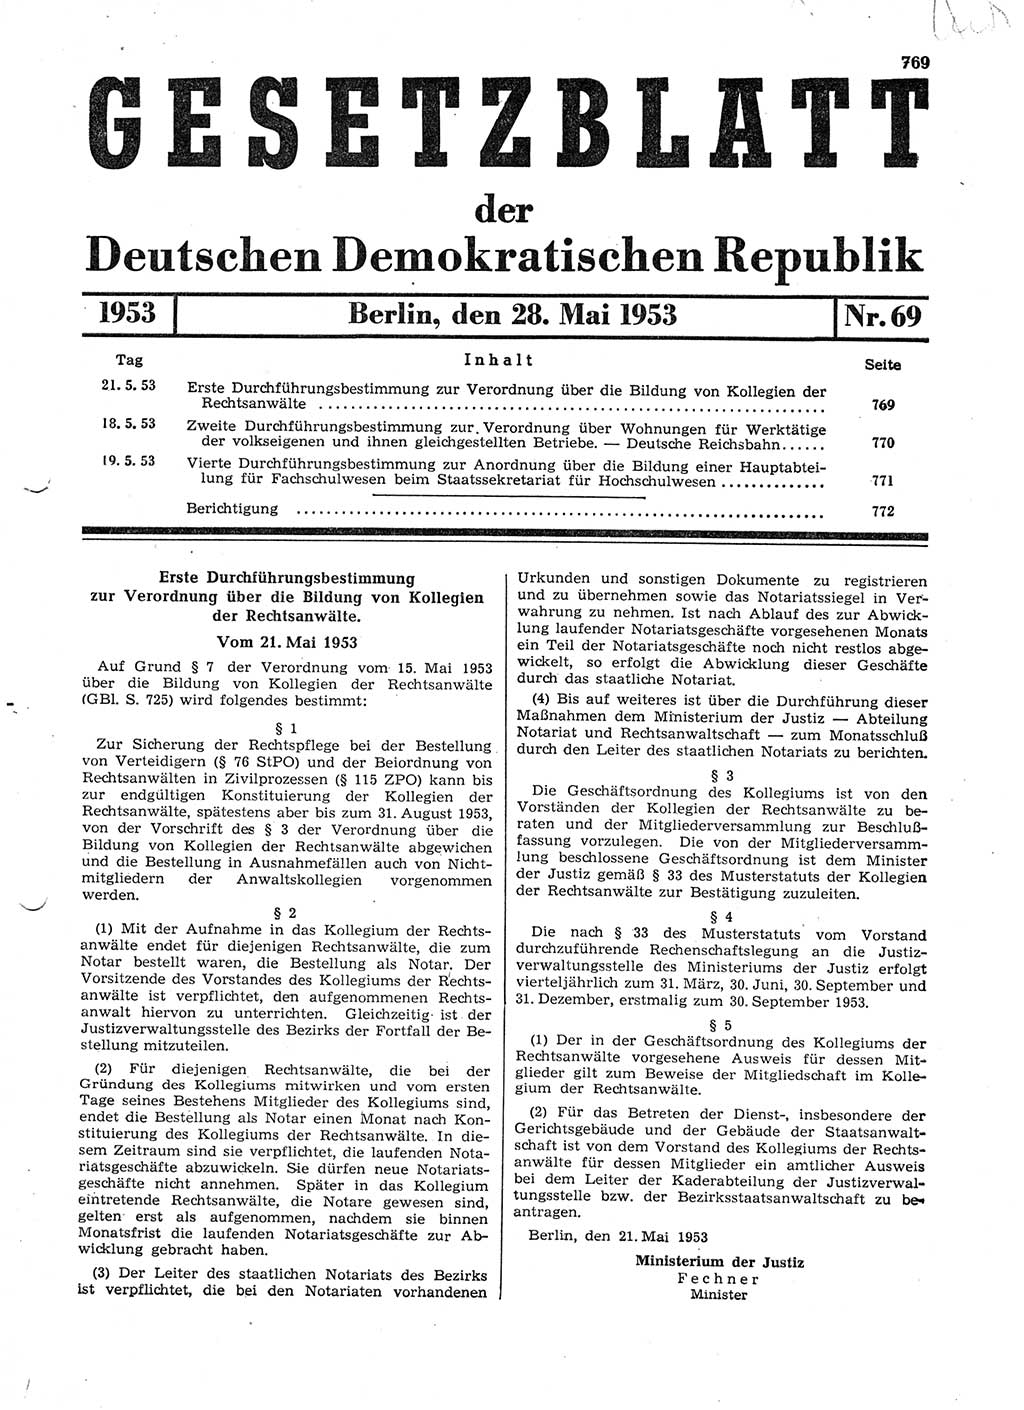 Gesetzblatt (GBl.) der Deutschen Demokratischen Republik (DDR) 1953, Seite 769 (GBl. DDR 1953, S. 769)